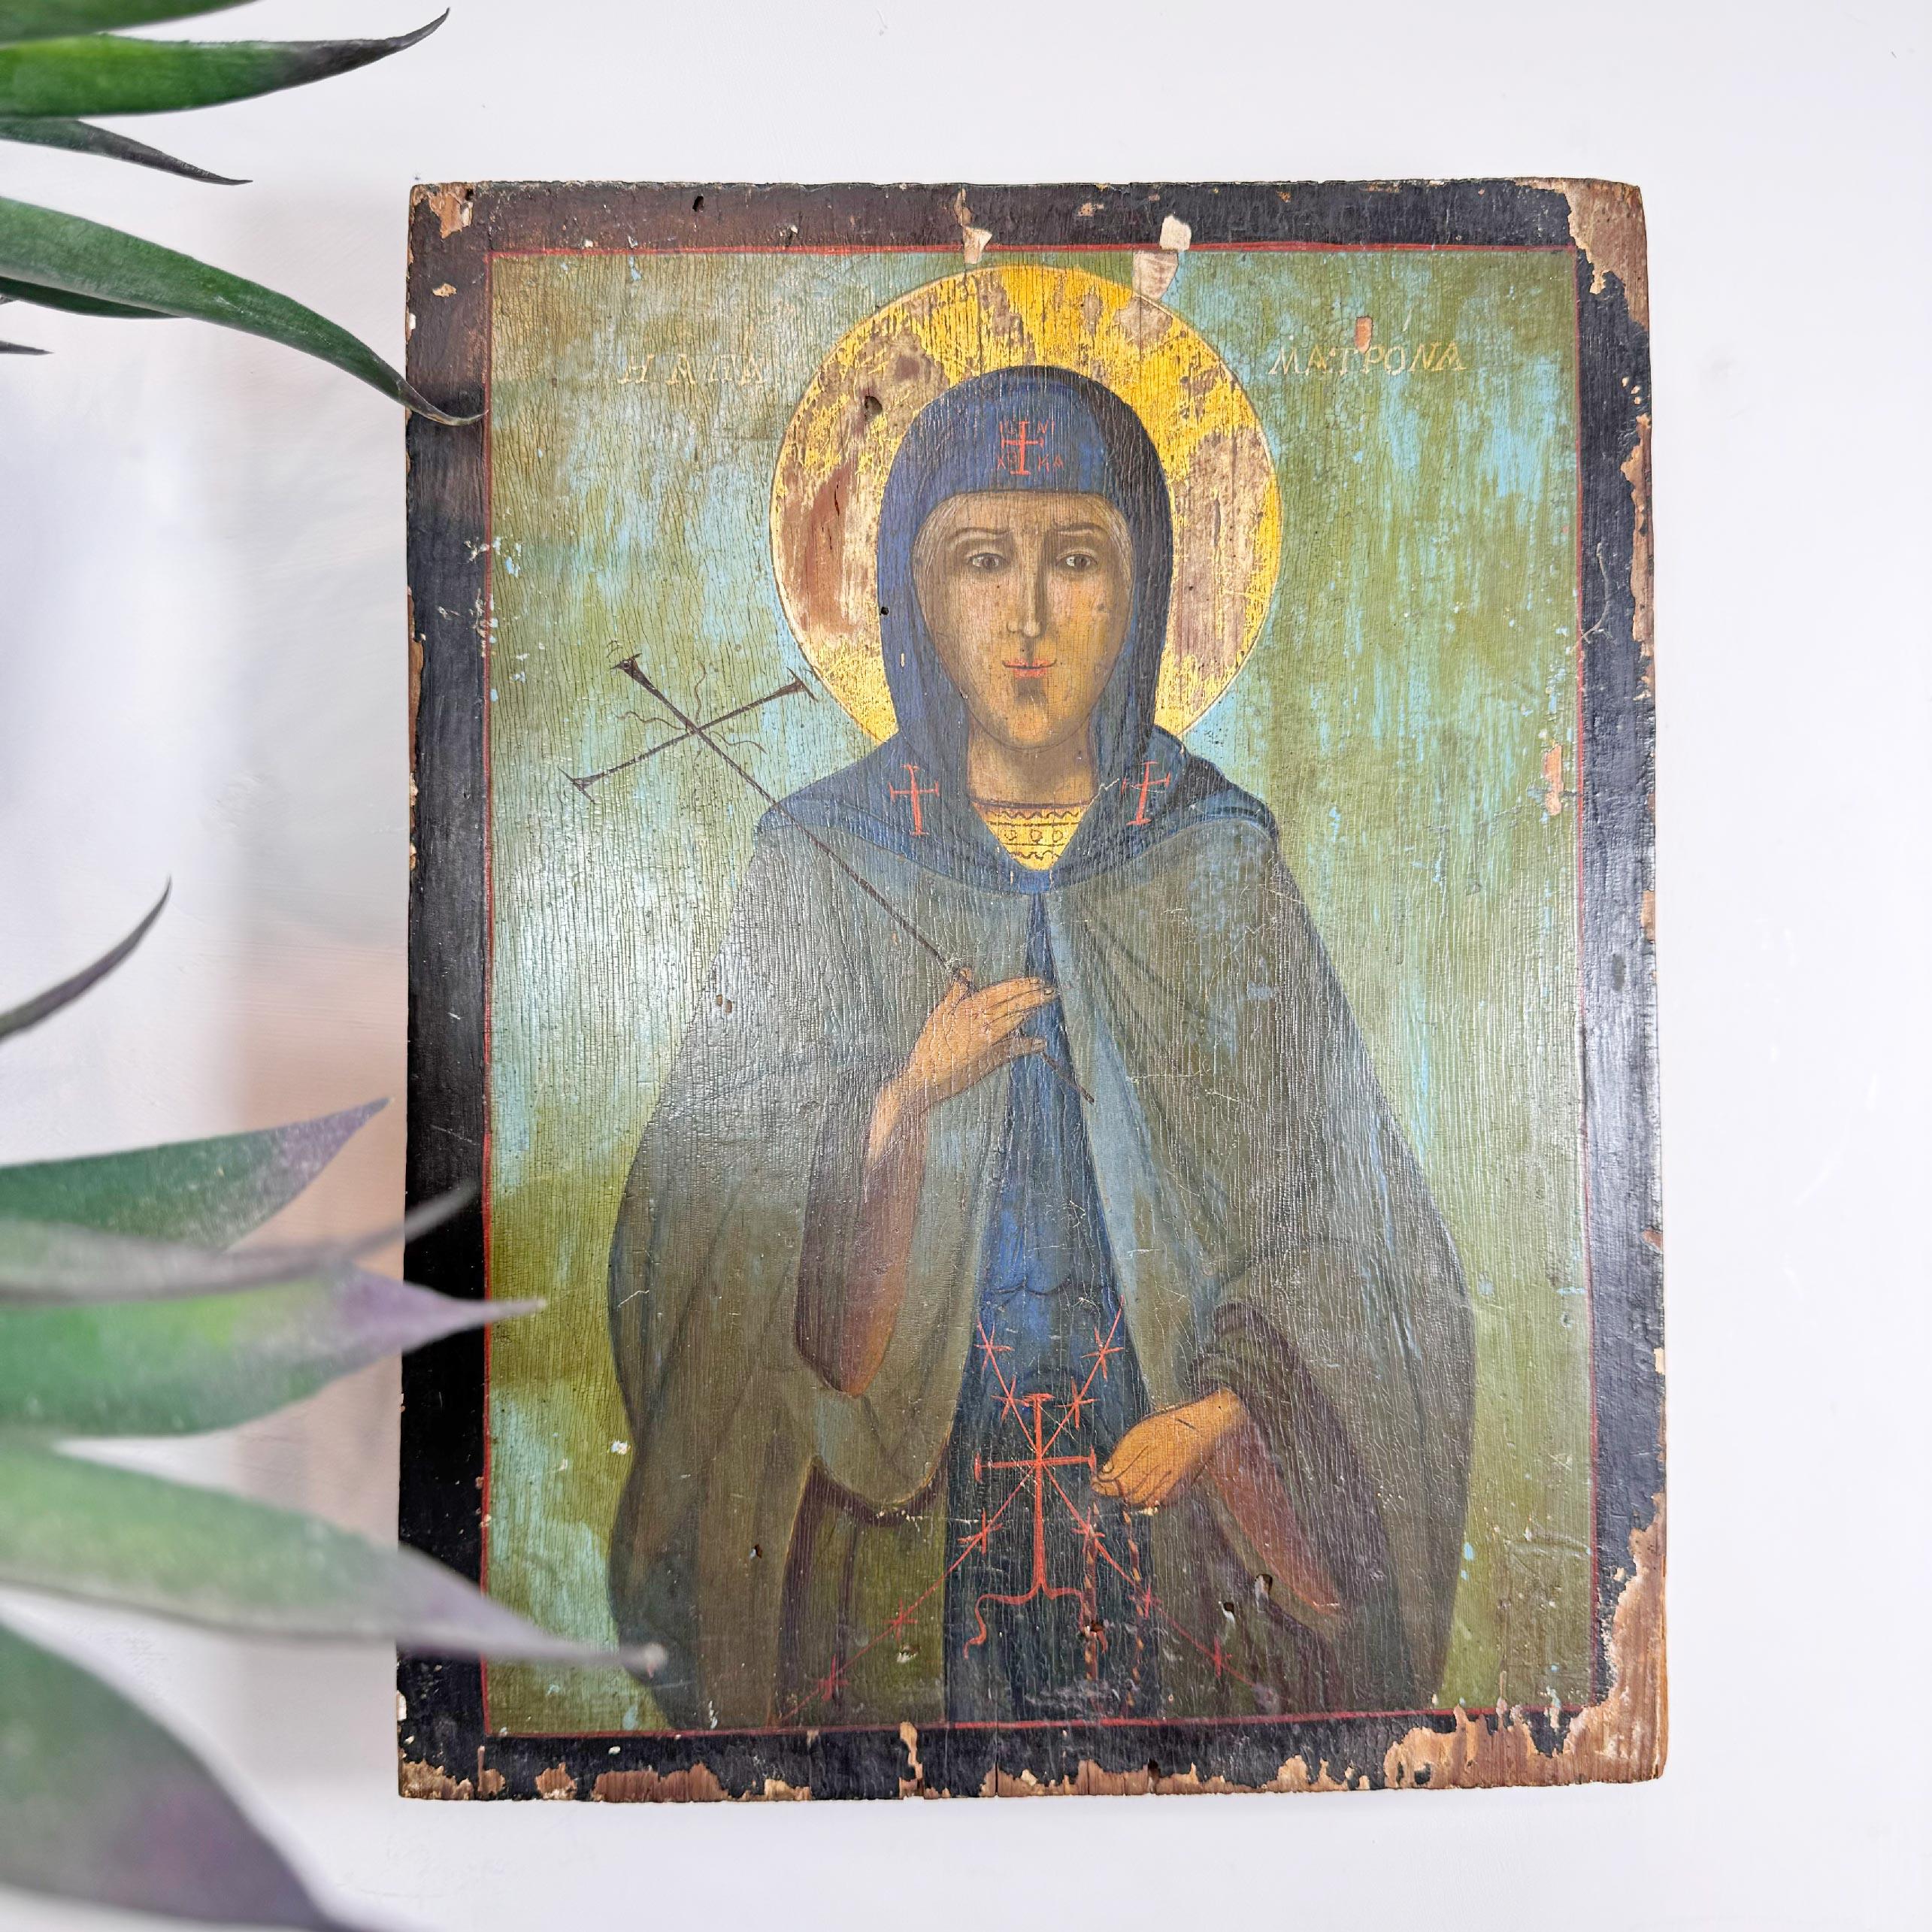 Unglaublich seltene Ikone auf Eichenholz aus dem 17. Jahrhundert, die die Heilige Matrona (Agia Matrona) darstellt. Diese Ikone stammt ursprünglich aus Chios in Griechenland und wurde erst jetzt entdeckt.  im Kloster Vatopedi. 



Matrona Dmitrievna